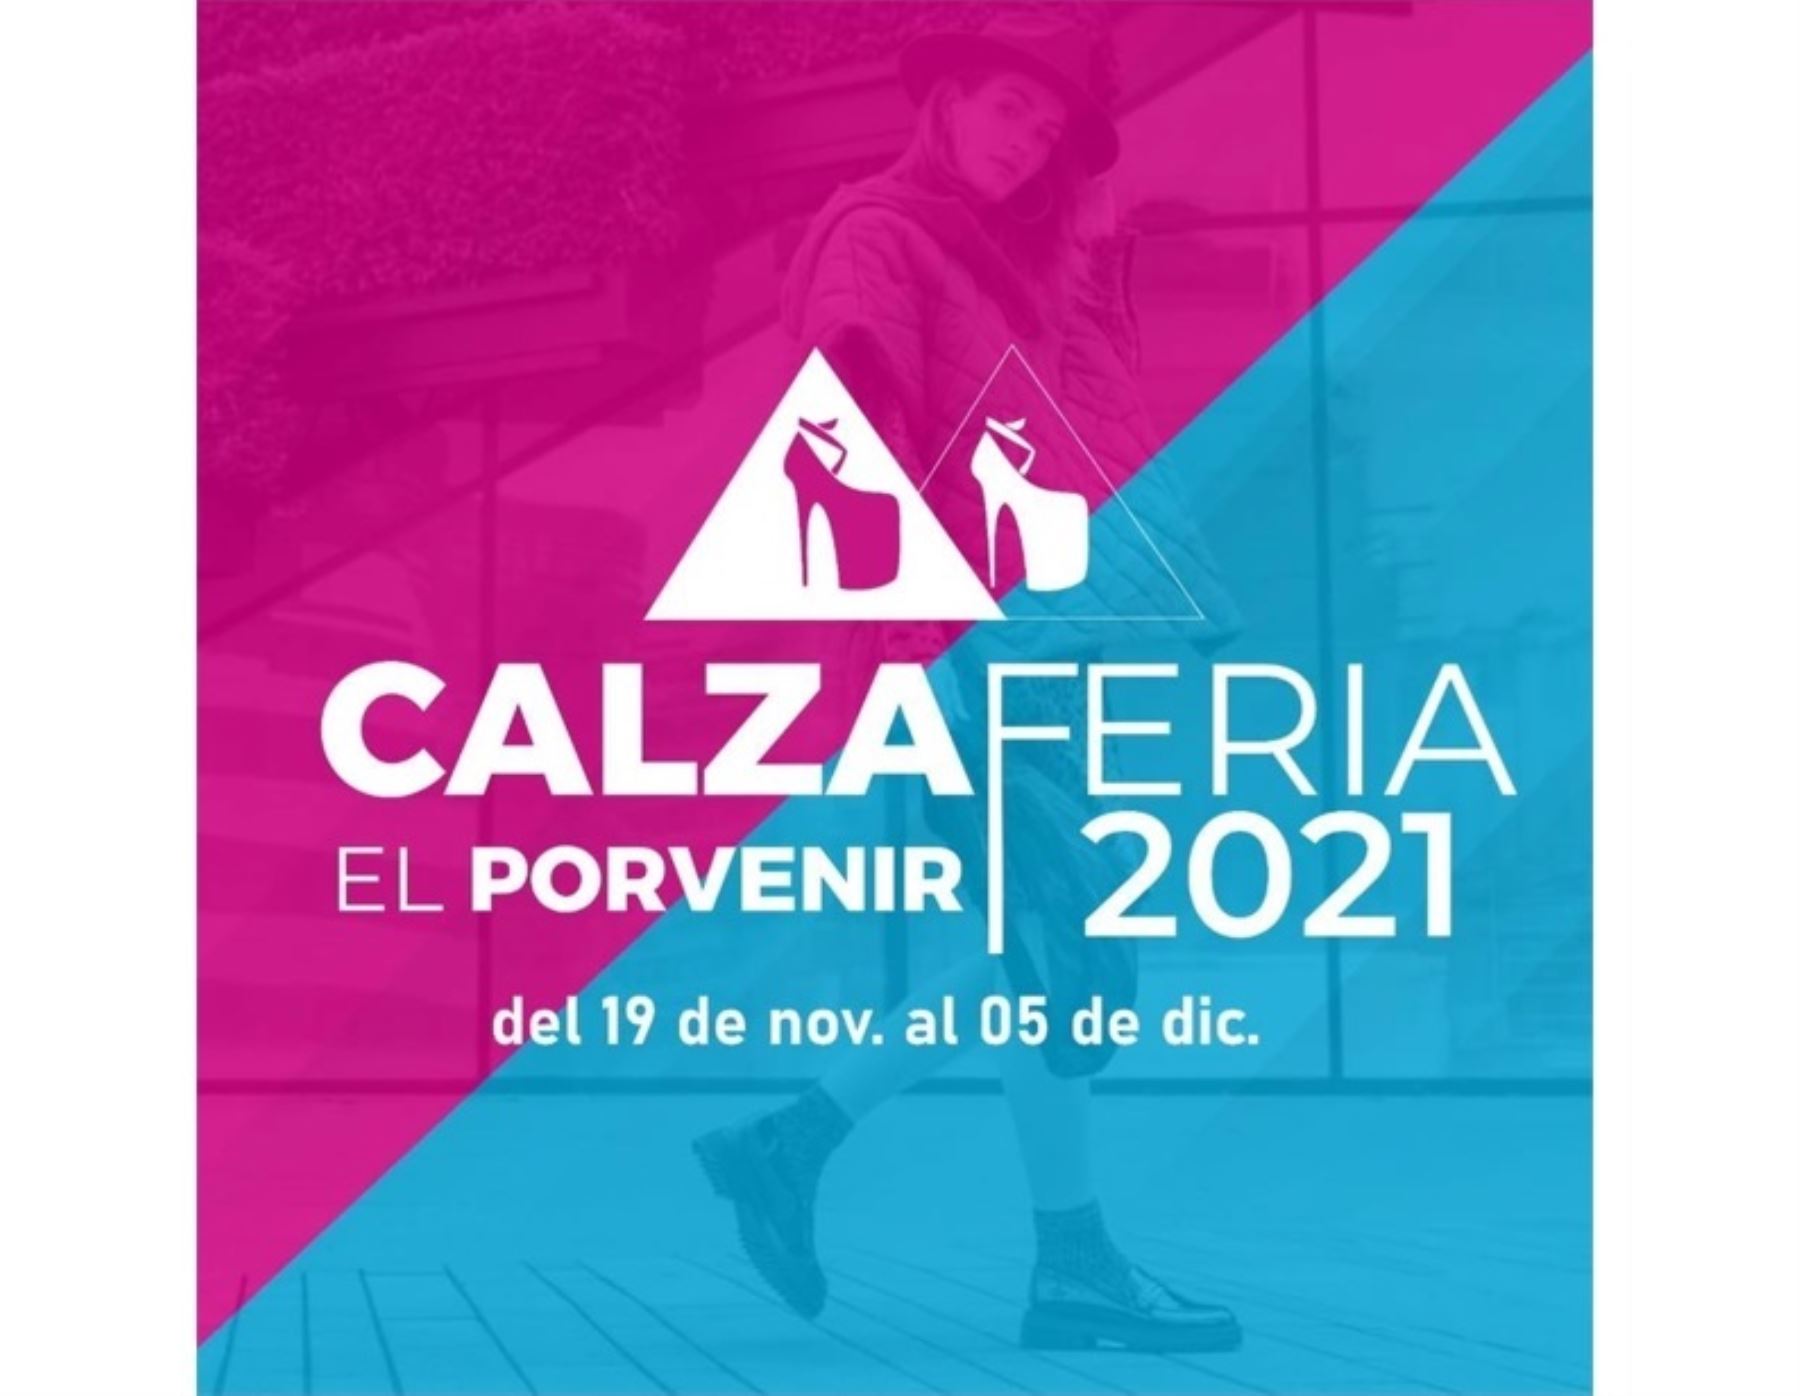 Empresarios del calzado de El Porvenir, en Trujillo, organizan feria para reactivar su actividad productiva. Calzaferia se realizará del 19 de noviembre al 5 de diciembre.